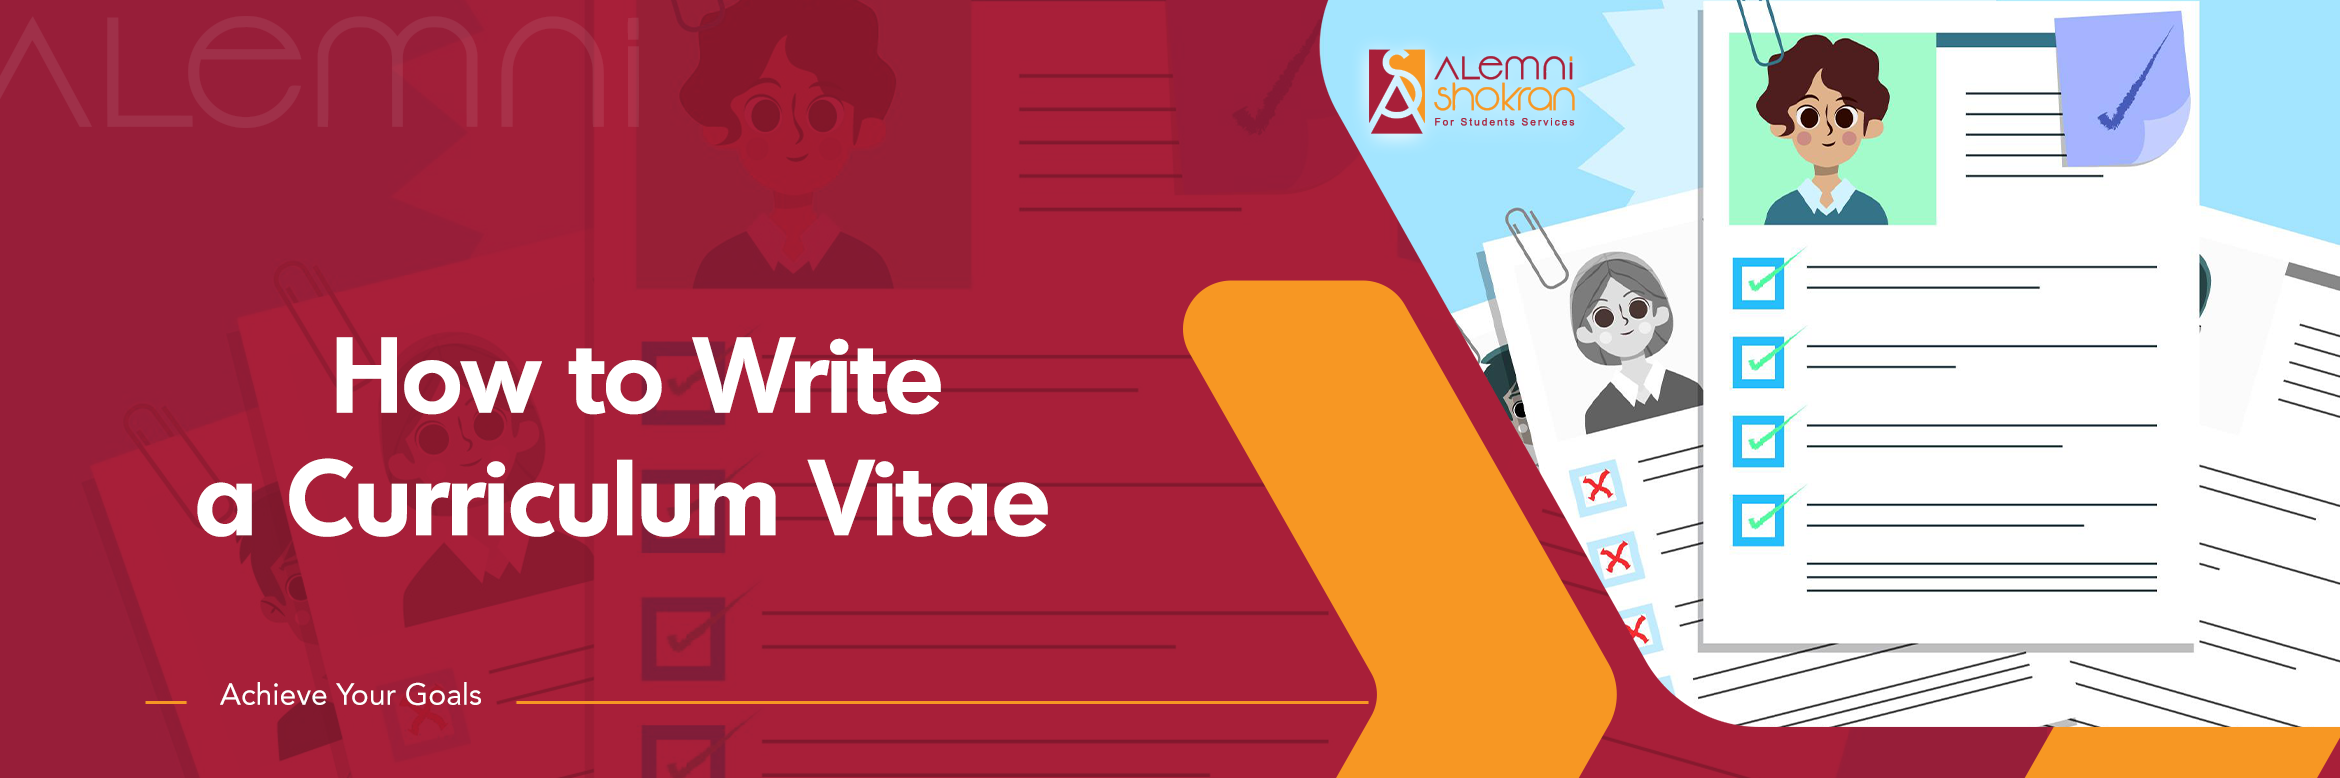 How-to-Write-a-Curriculum-Vitae